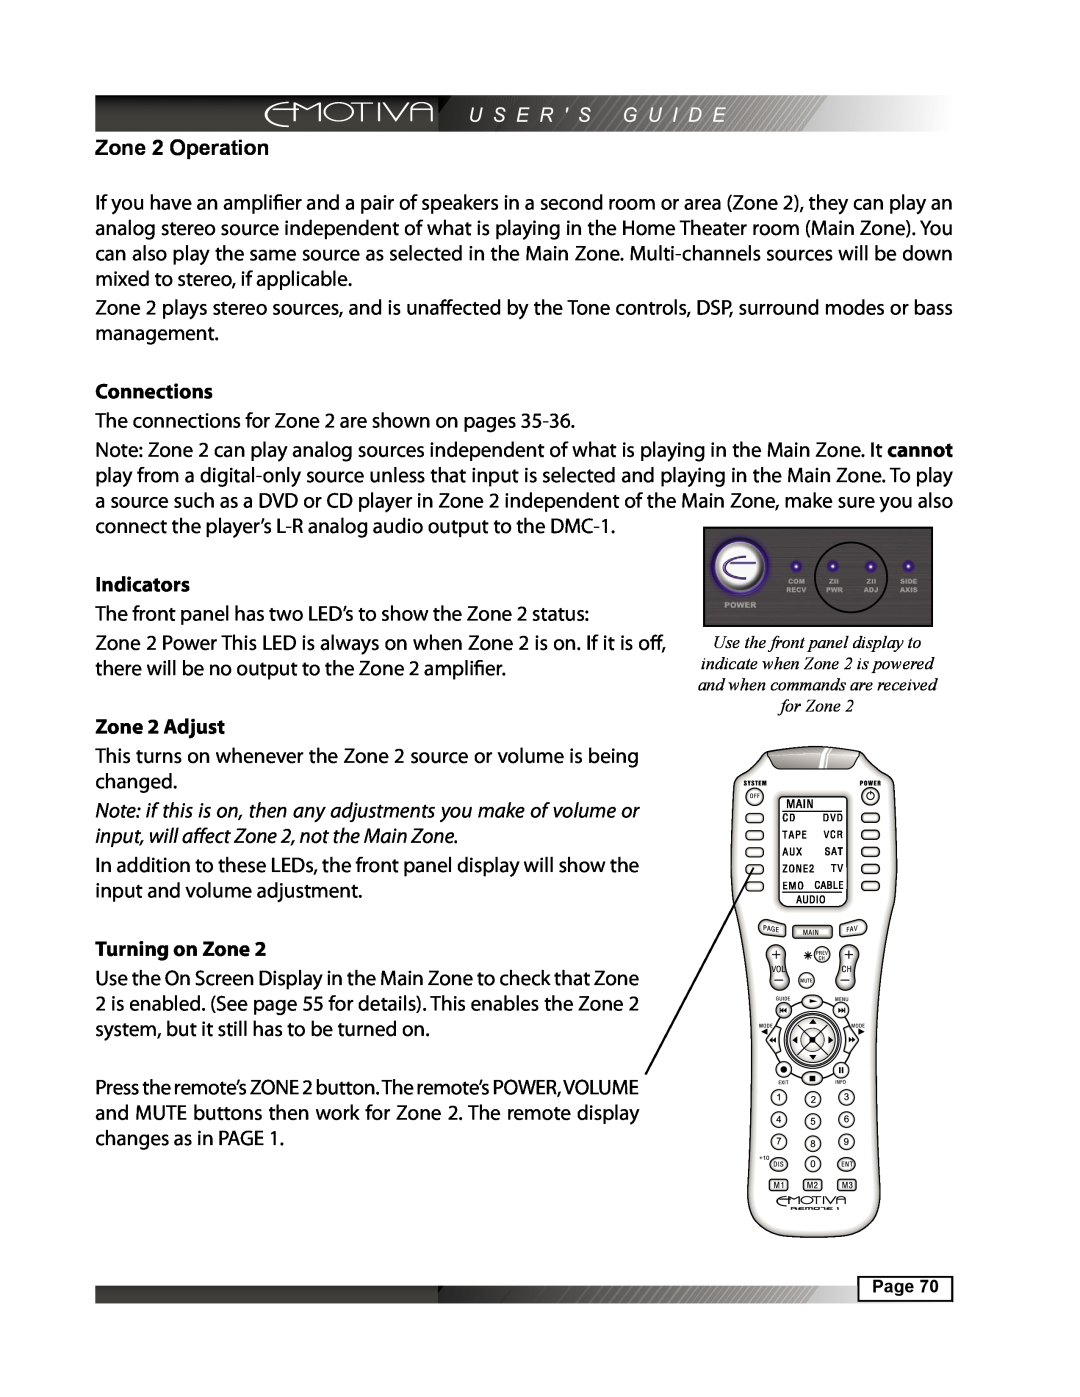 Emotiva DMC-1 manual Zone 2 Operation, Connections, Indicators, Zone 2 Adjust, Turning on Zone 